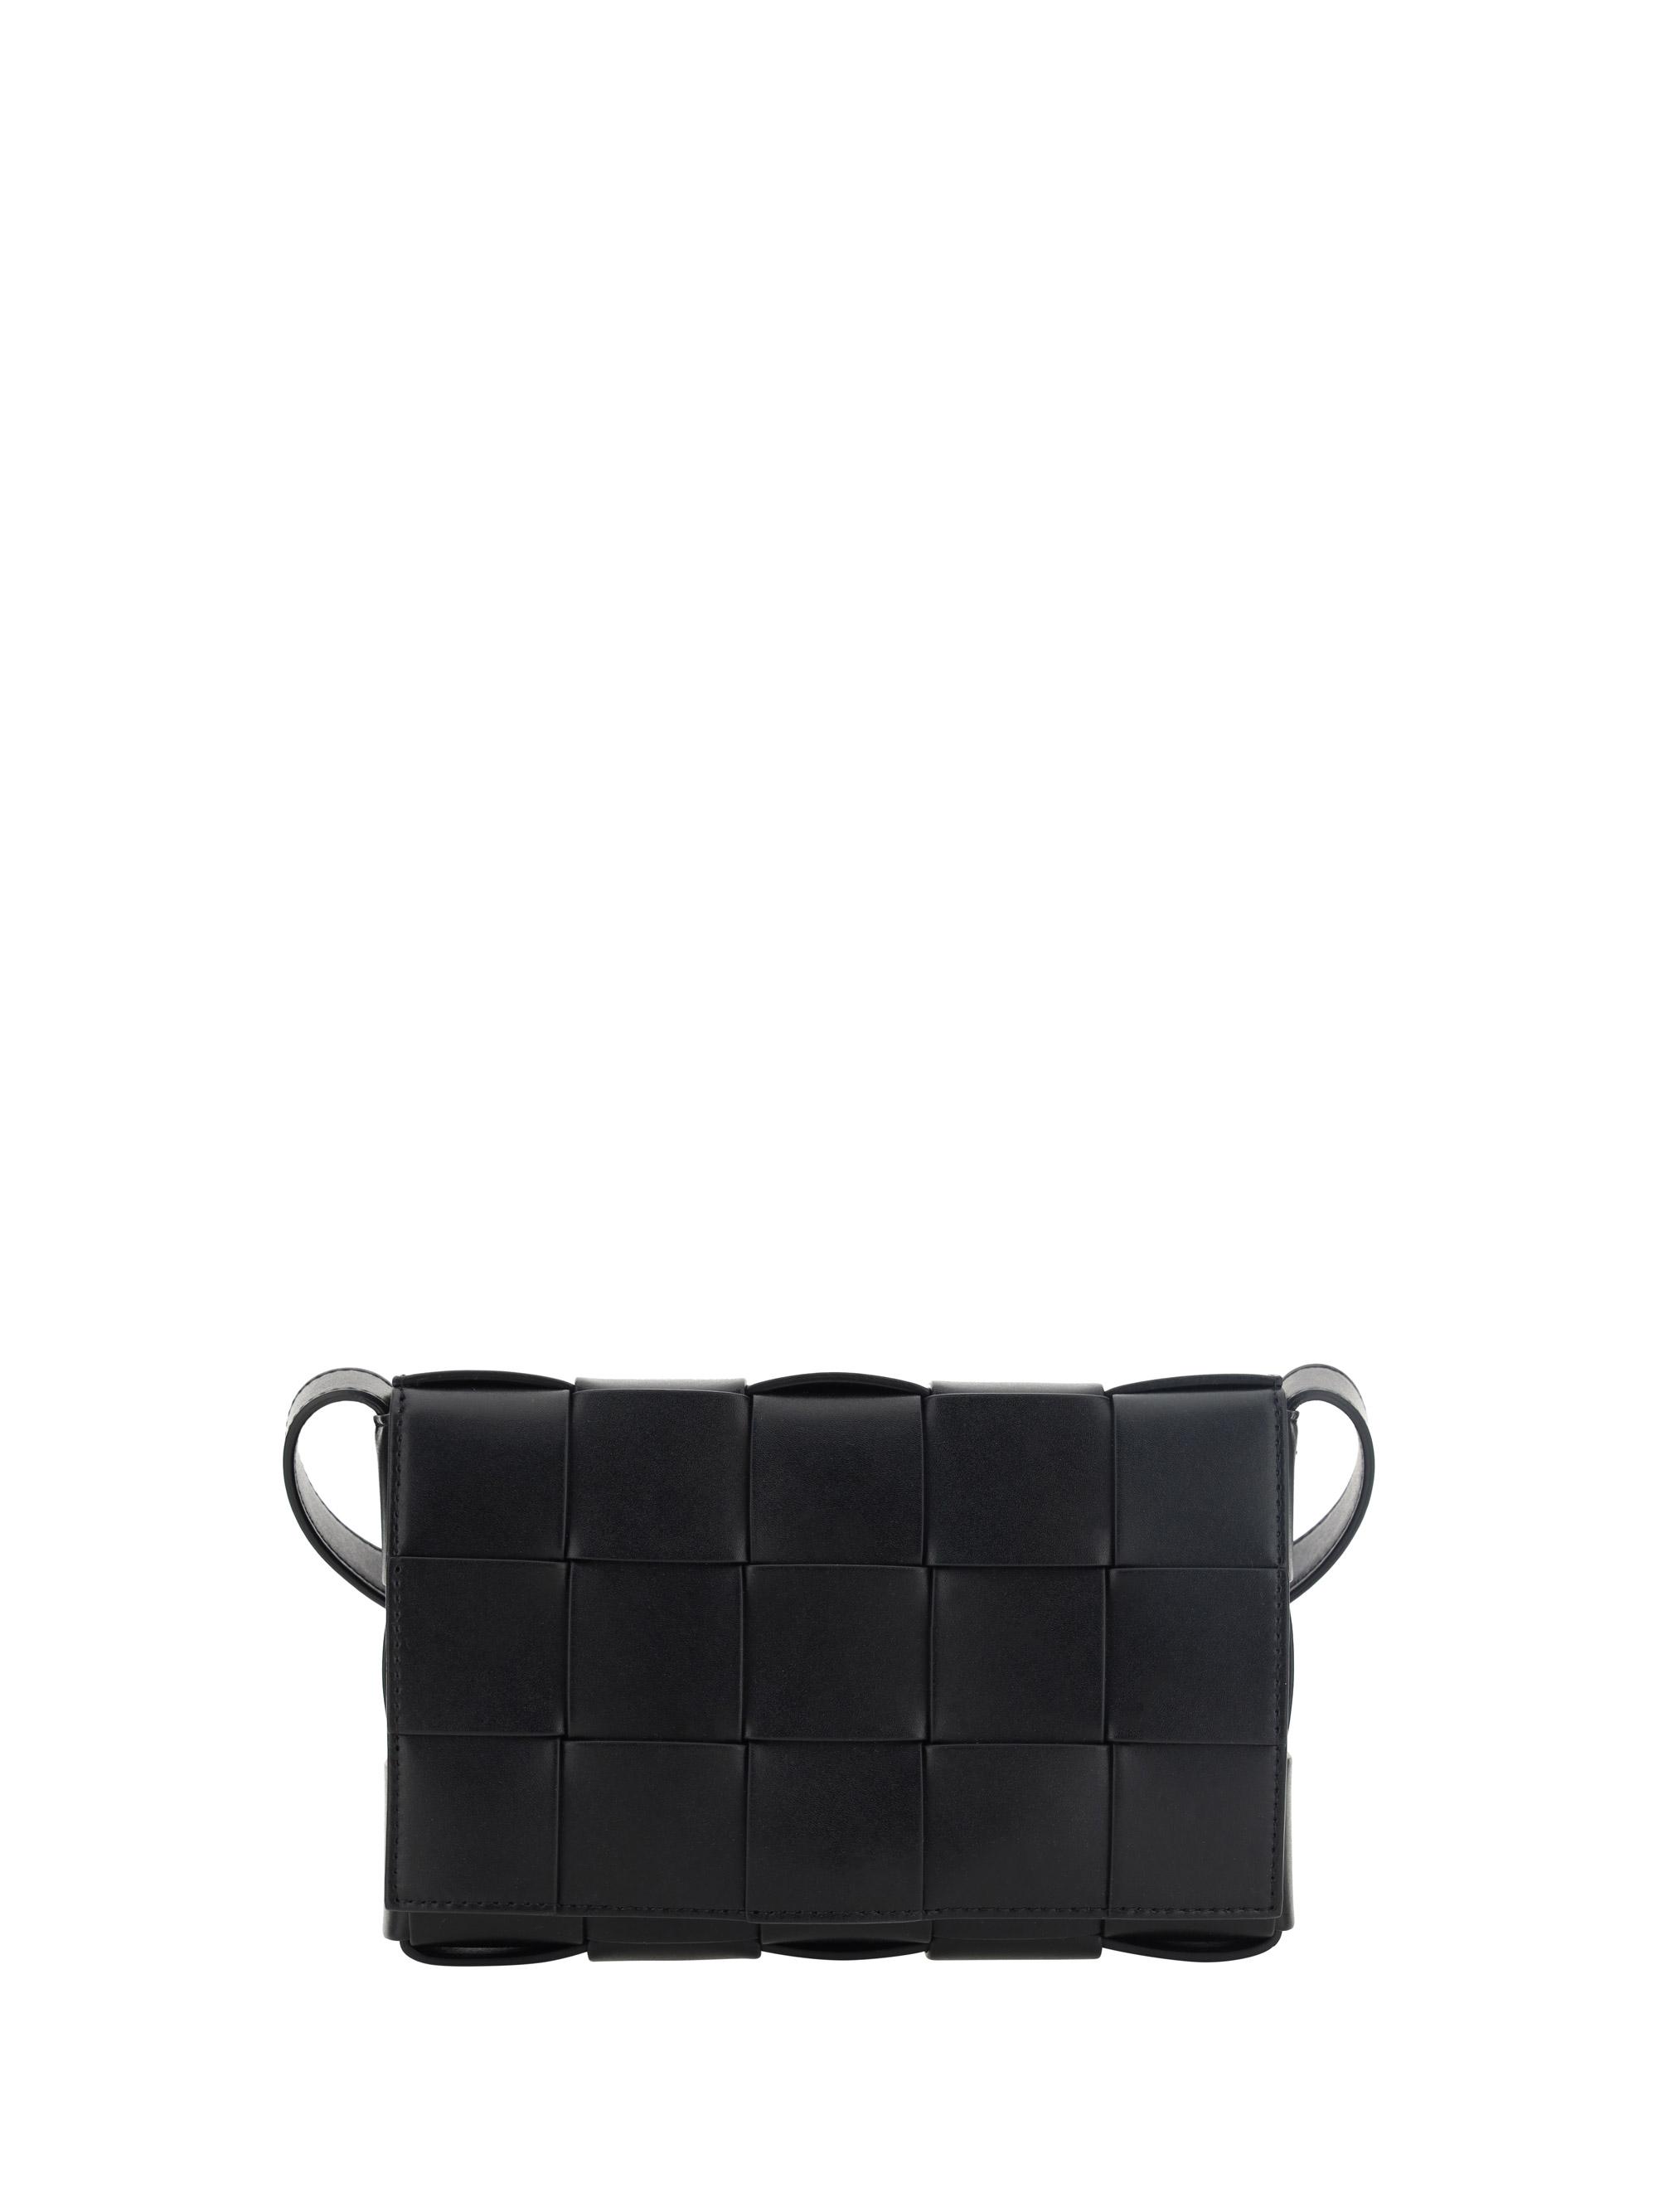 Bottega Veneta Cassette Shoulder Bag in Black